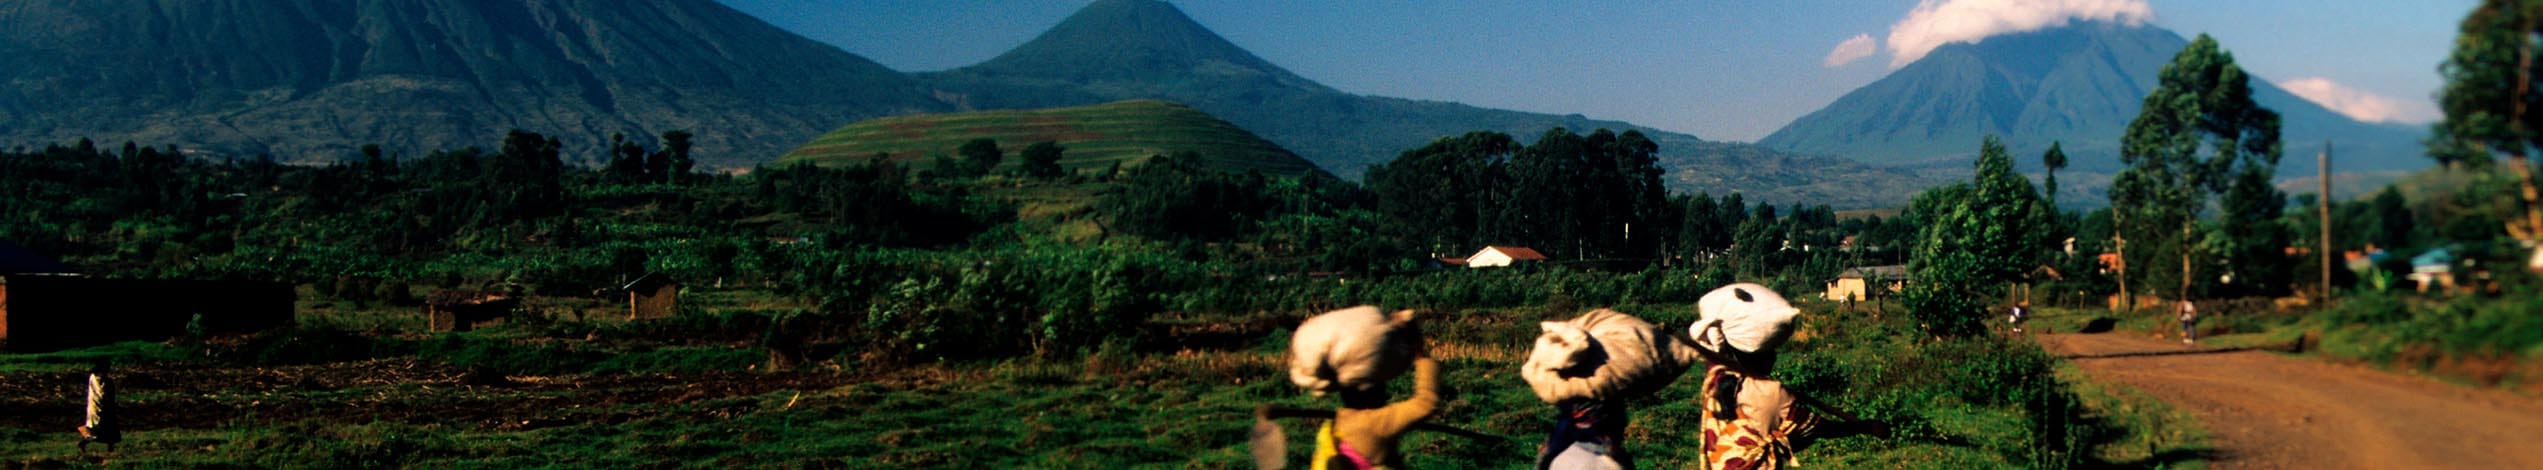 Ultimata Uganda och vulkantrek i Rwanda